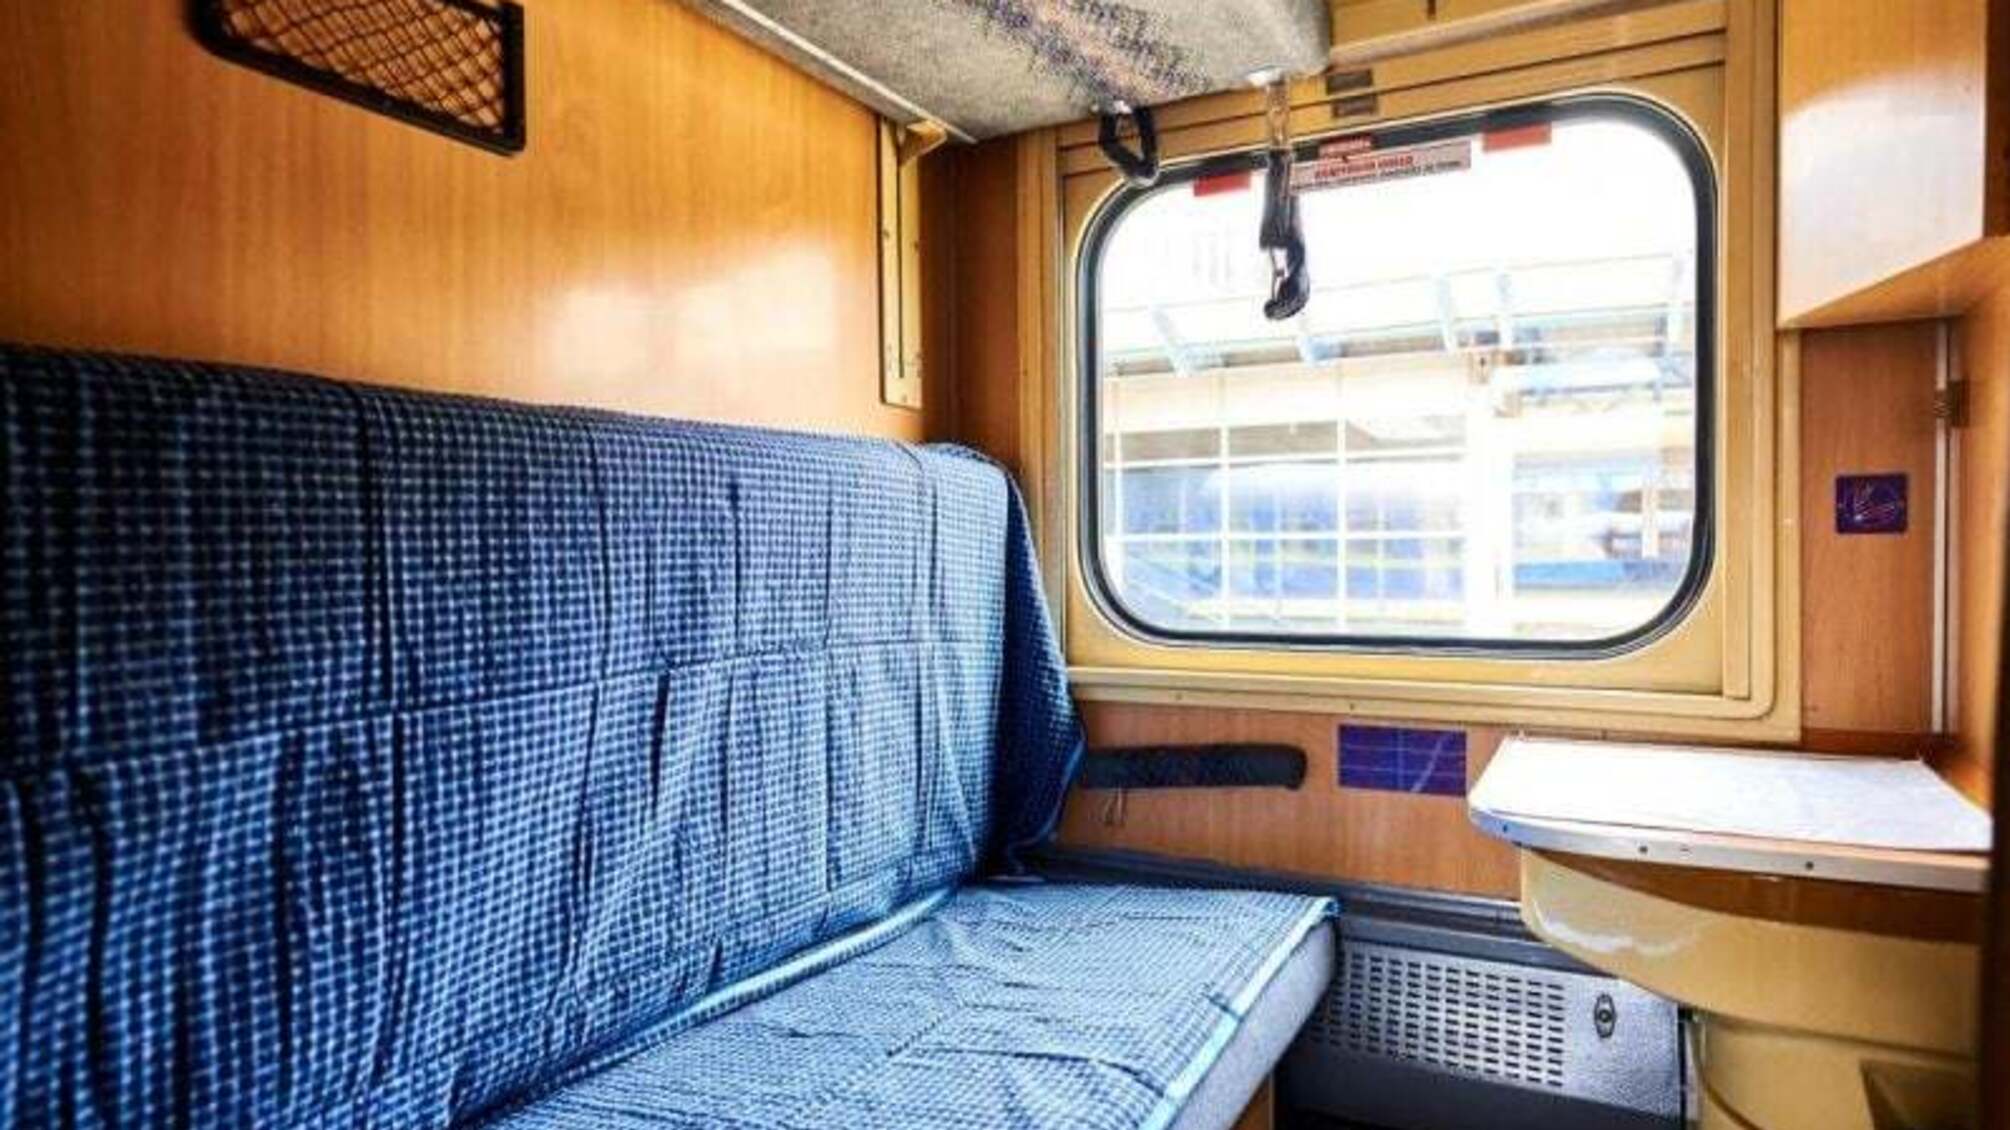 Укрзализныця начинает продажу билетов онлайн на поезда в Австрию